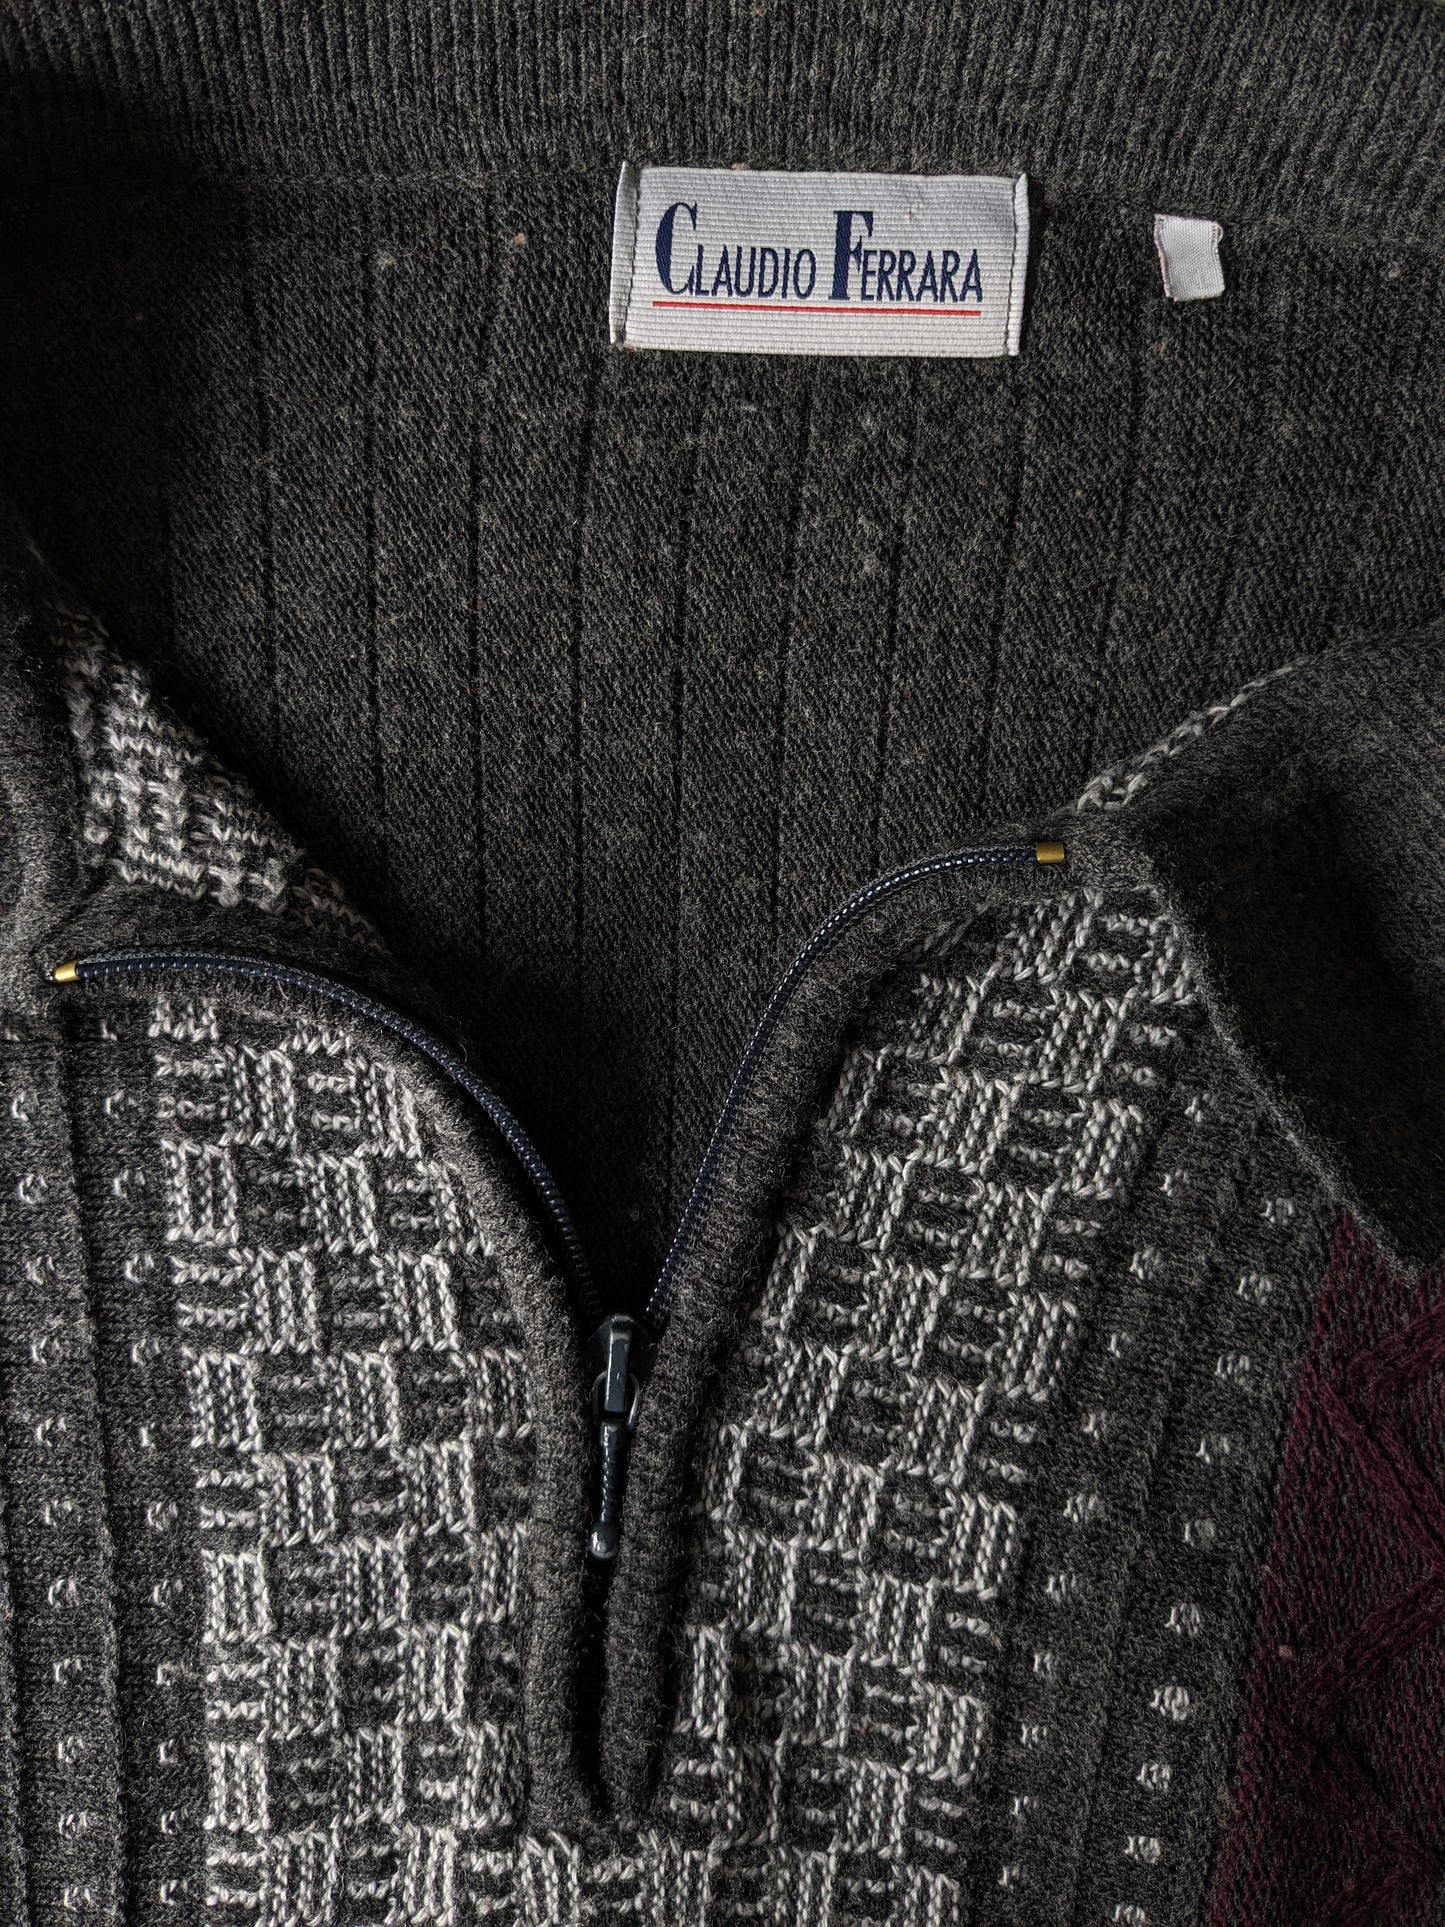 Magione di lana Claudio Ferrara vintage con cerniera. Motivo grigio Bordeaux. Dimensione 2xl / xxl.